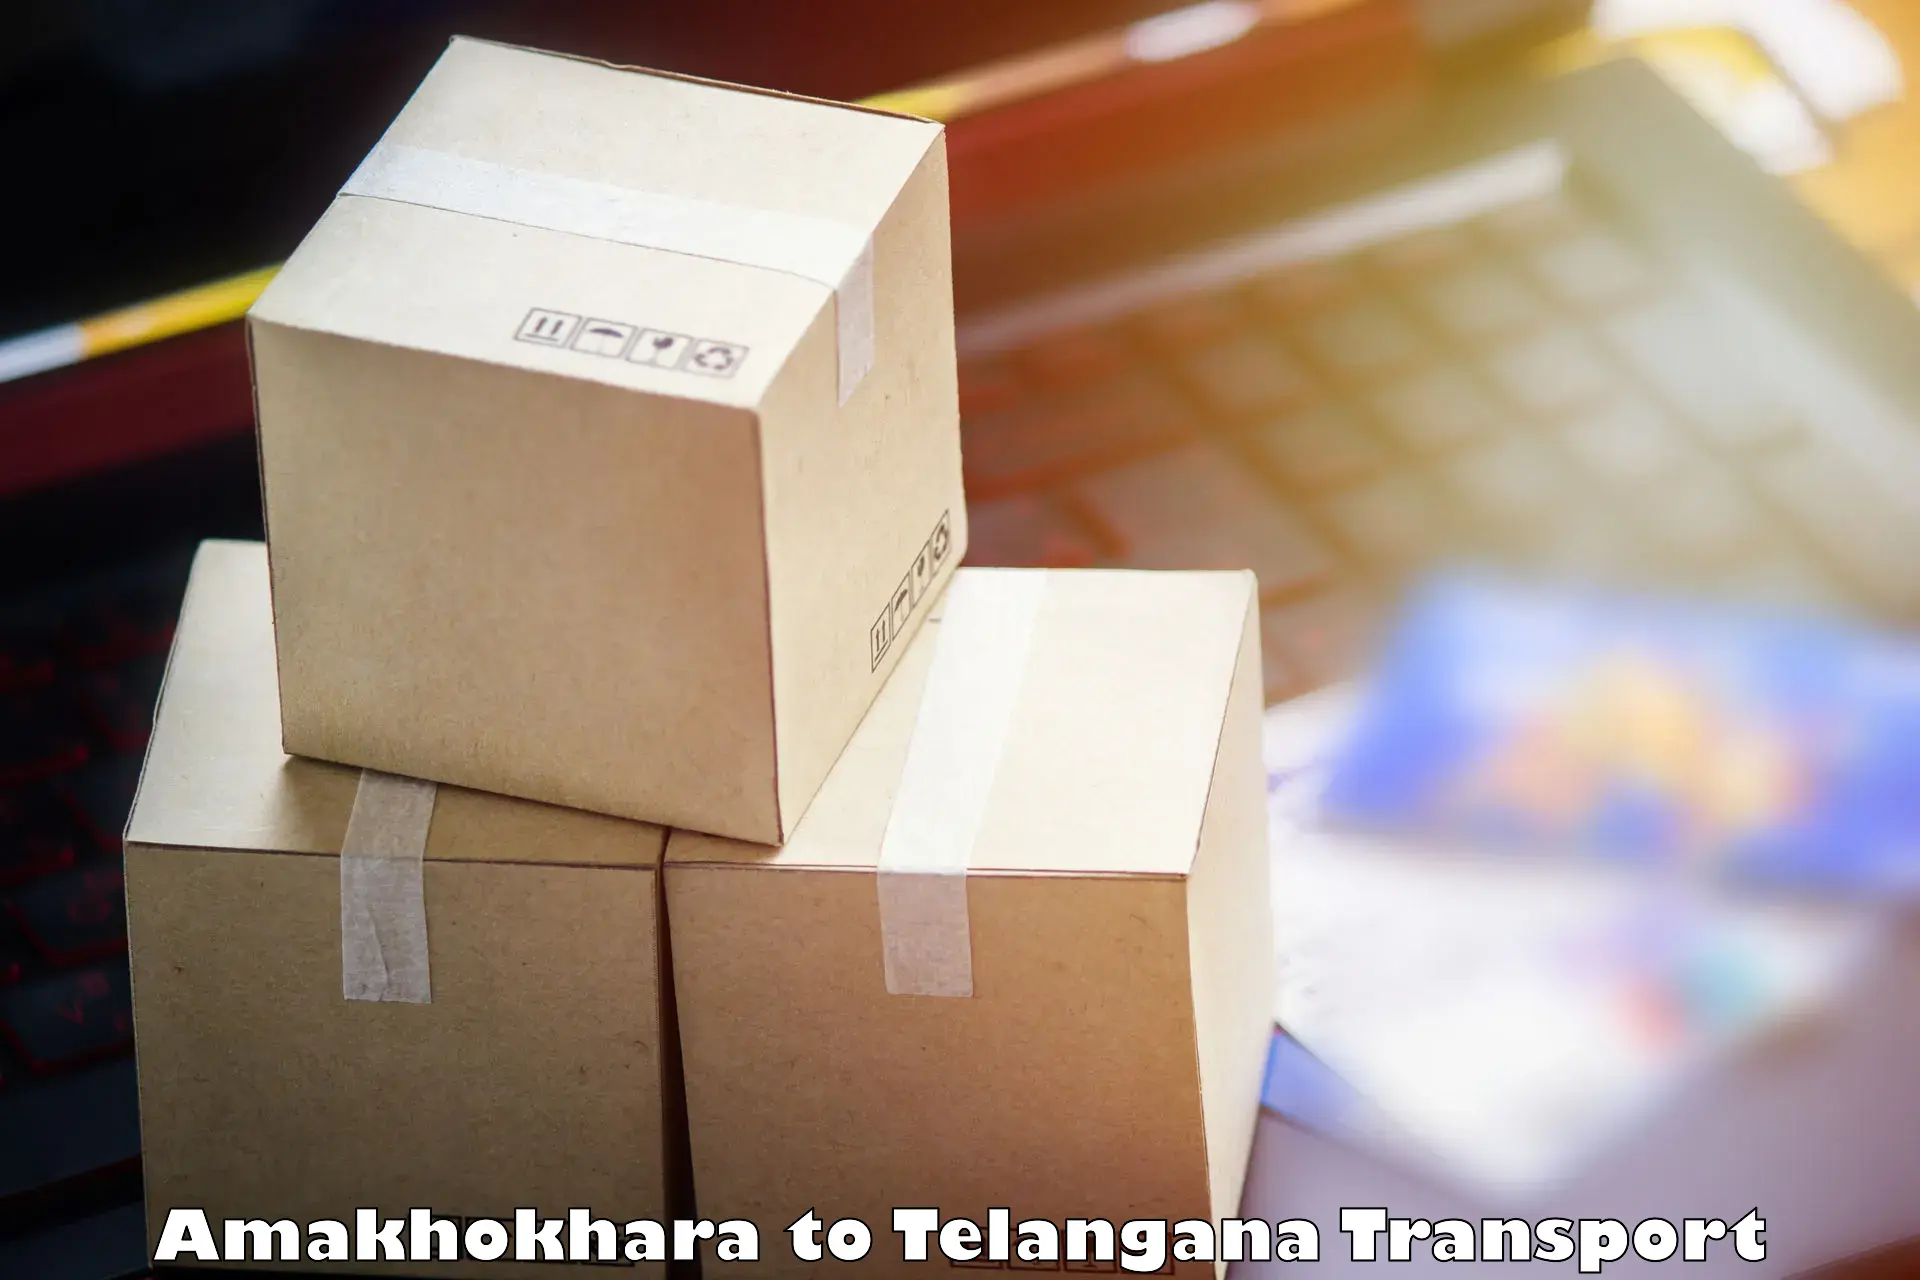 Online transport Amakhokhara to Mahabubabad